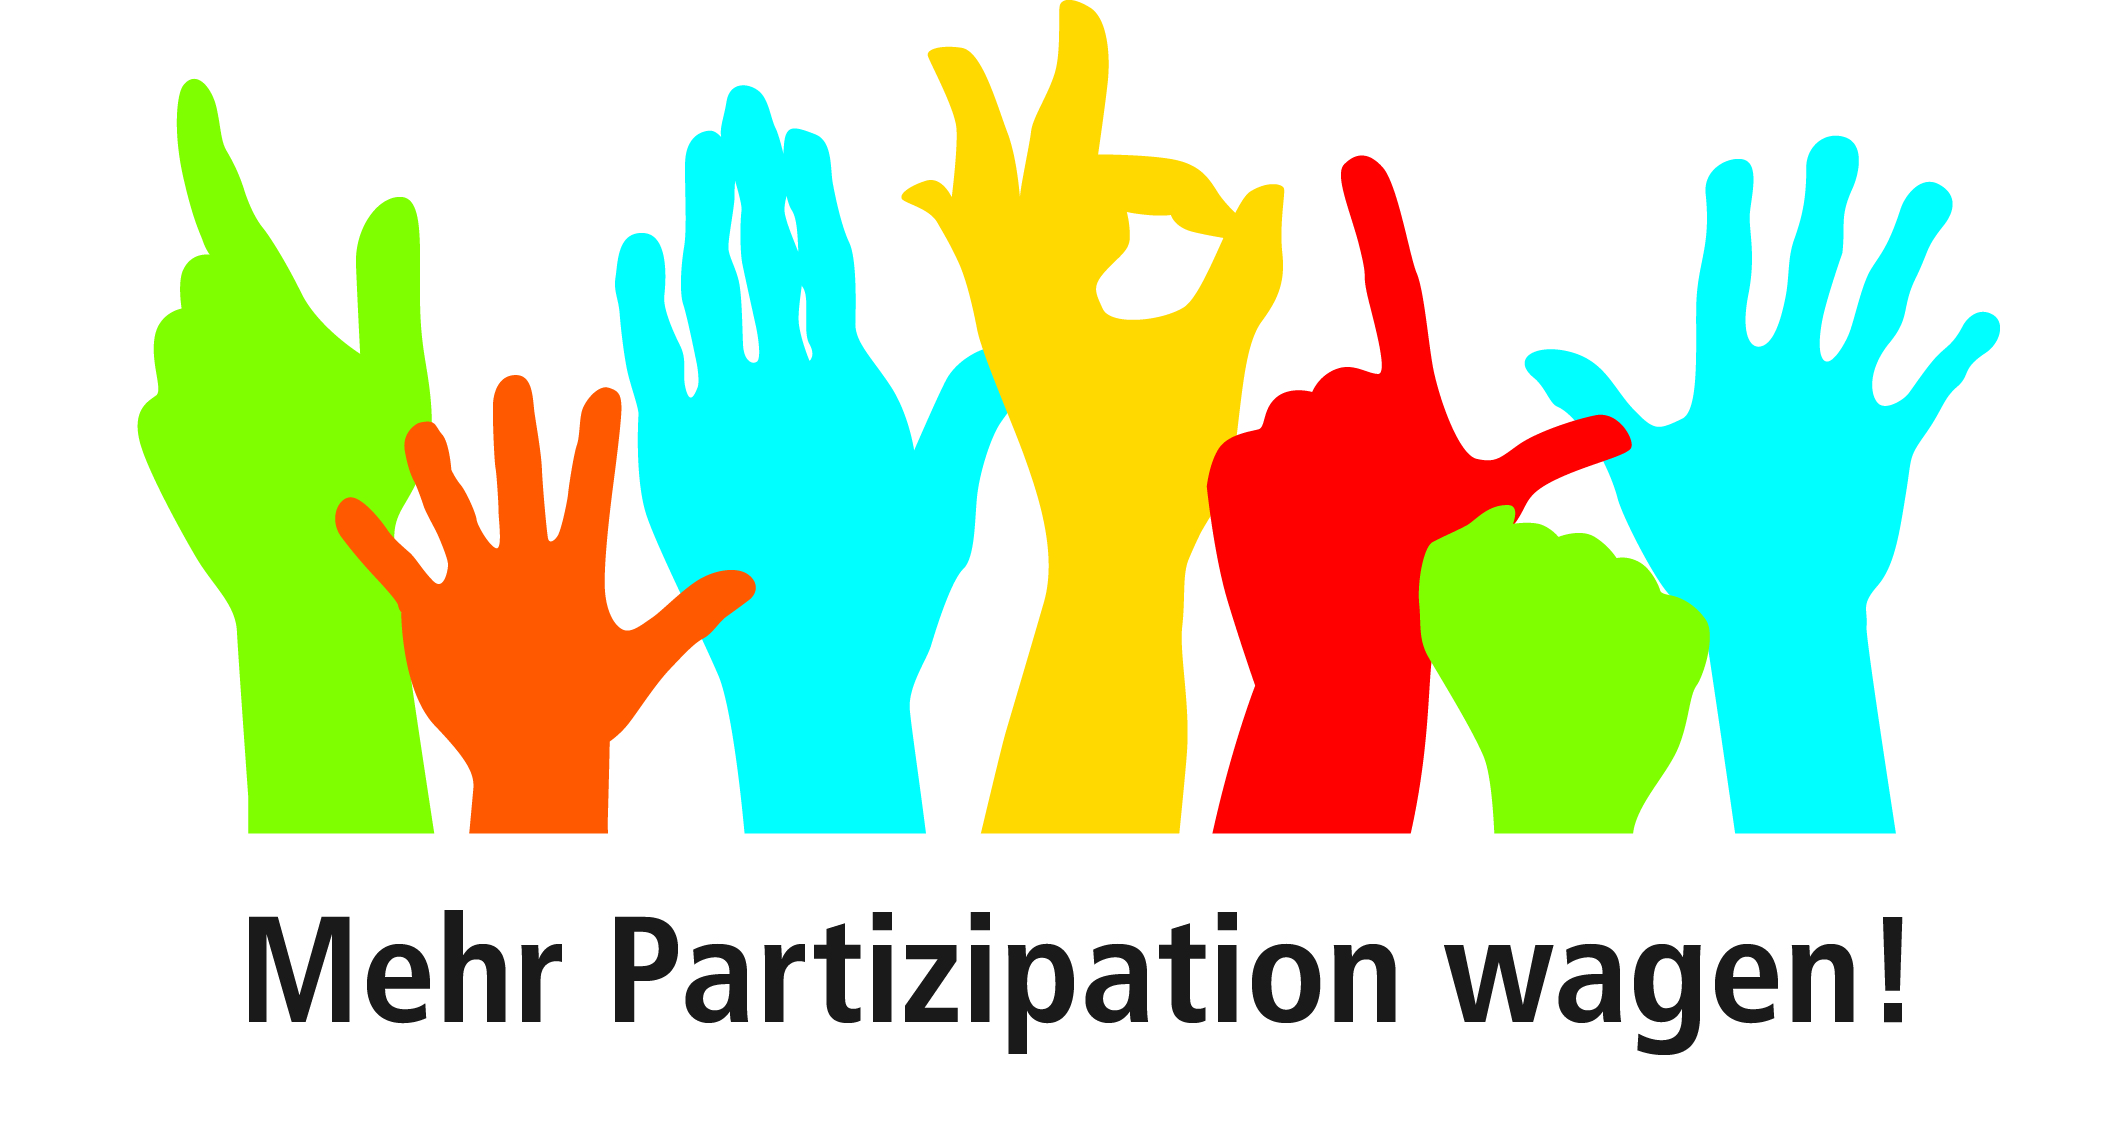 Logo des Projektes "Mehr Partizipation wagen!" - Mehrere bunte Hände in unetrscheidlichen Formen über dem schwarzen Schriftzug Mehr partizipation wagen!